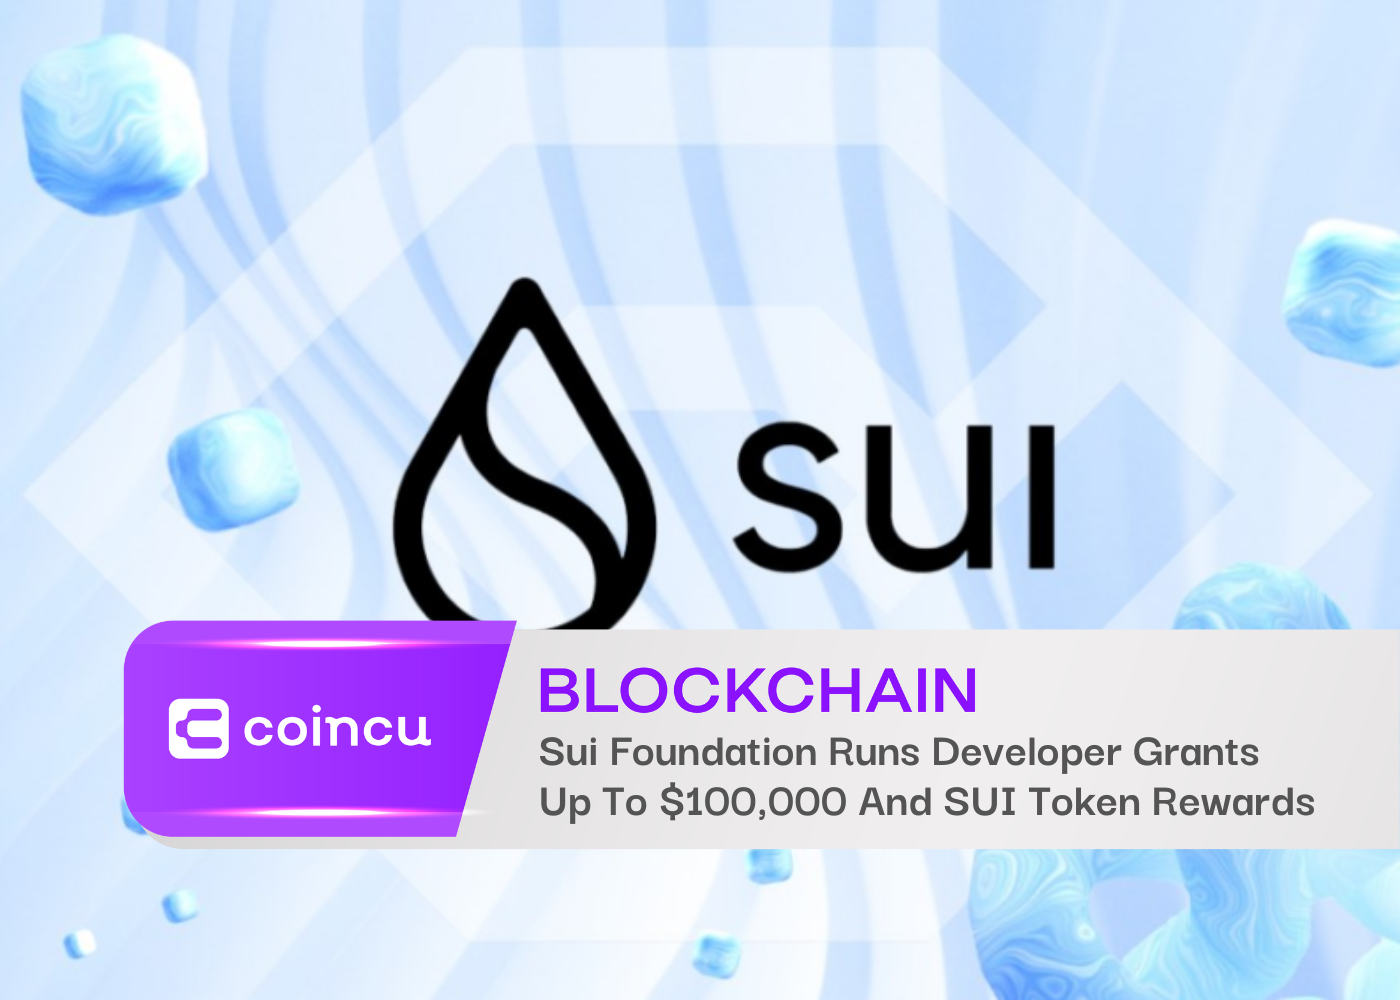 La Fondation Sui offre des subventions aux développeurs allant jusqu'à 100,000 XNUMX $ et des récompenses en jetons SUI